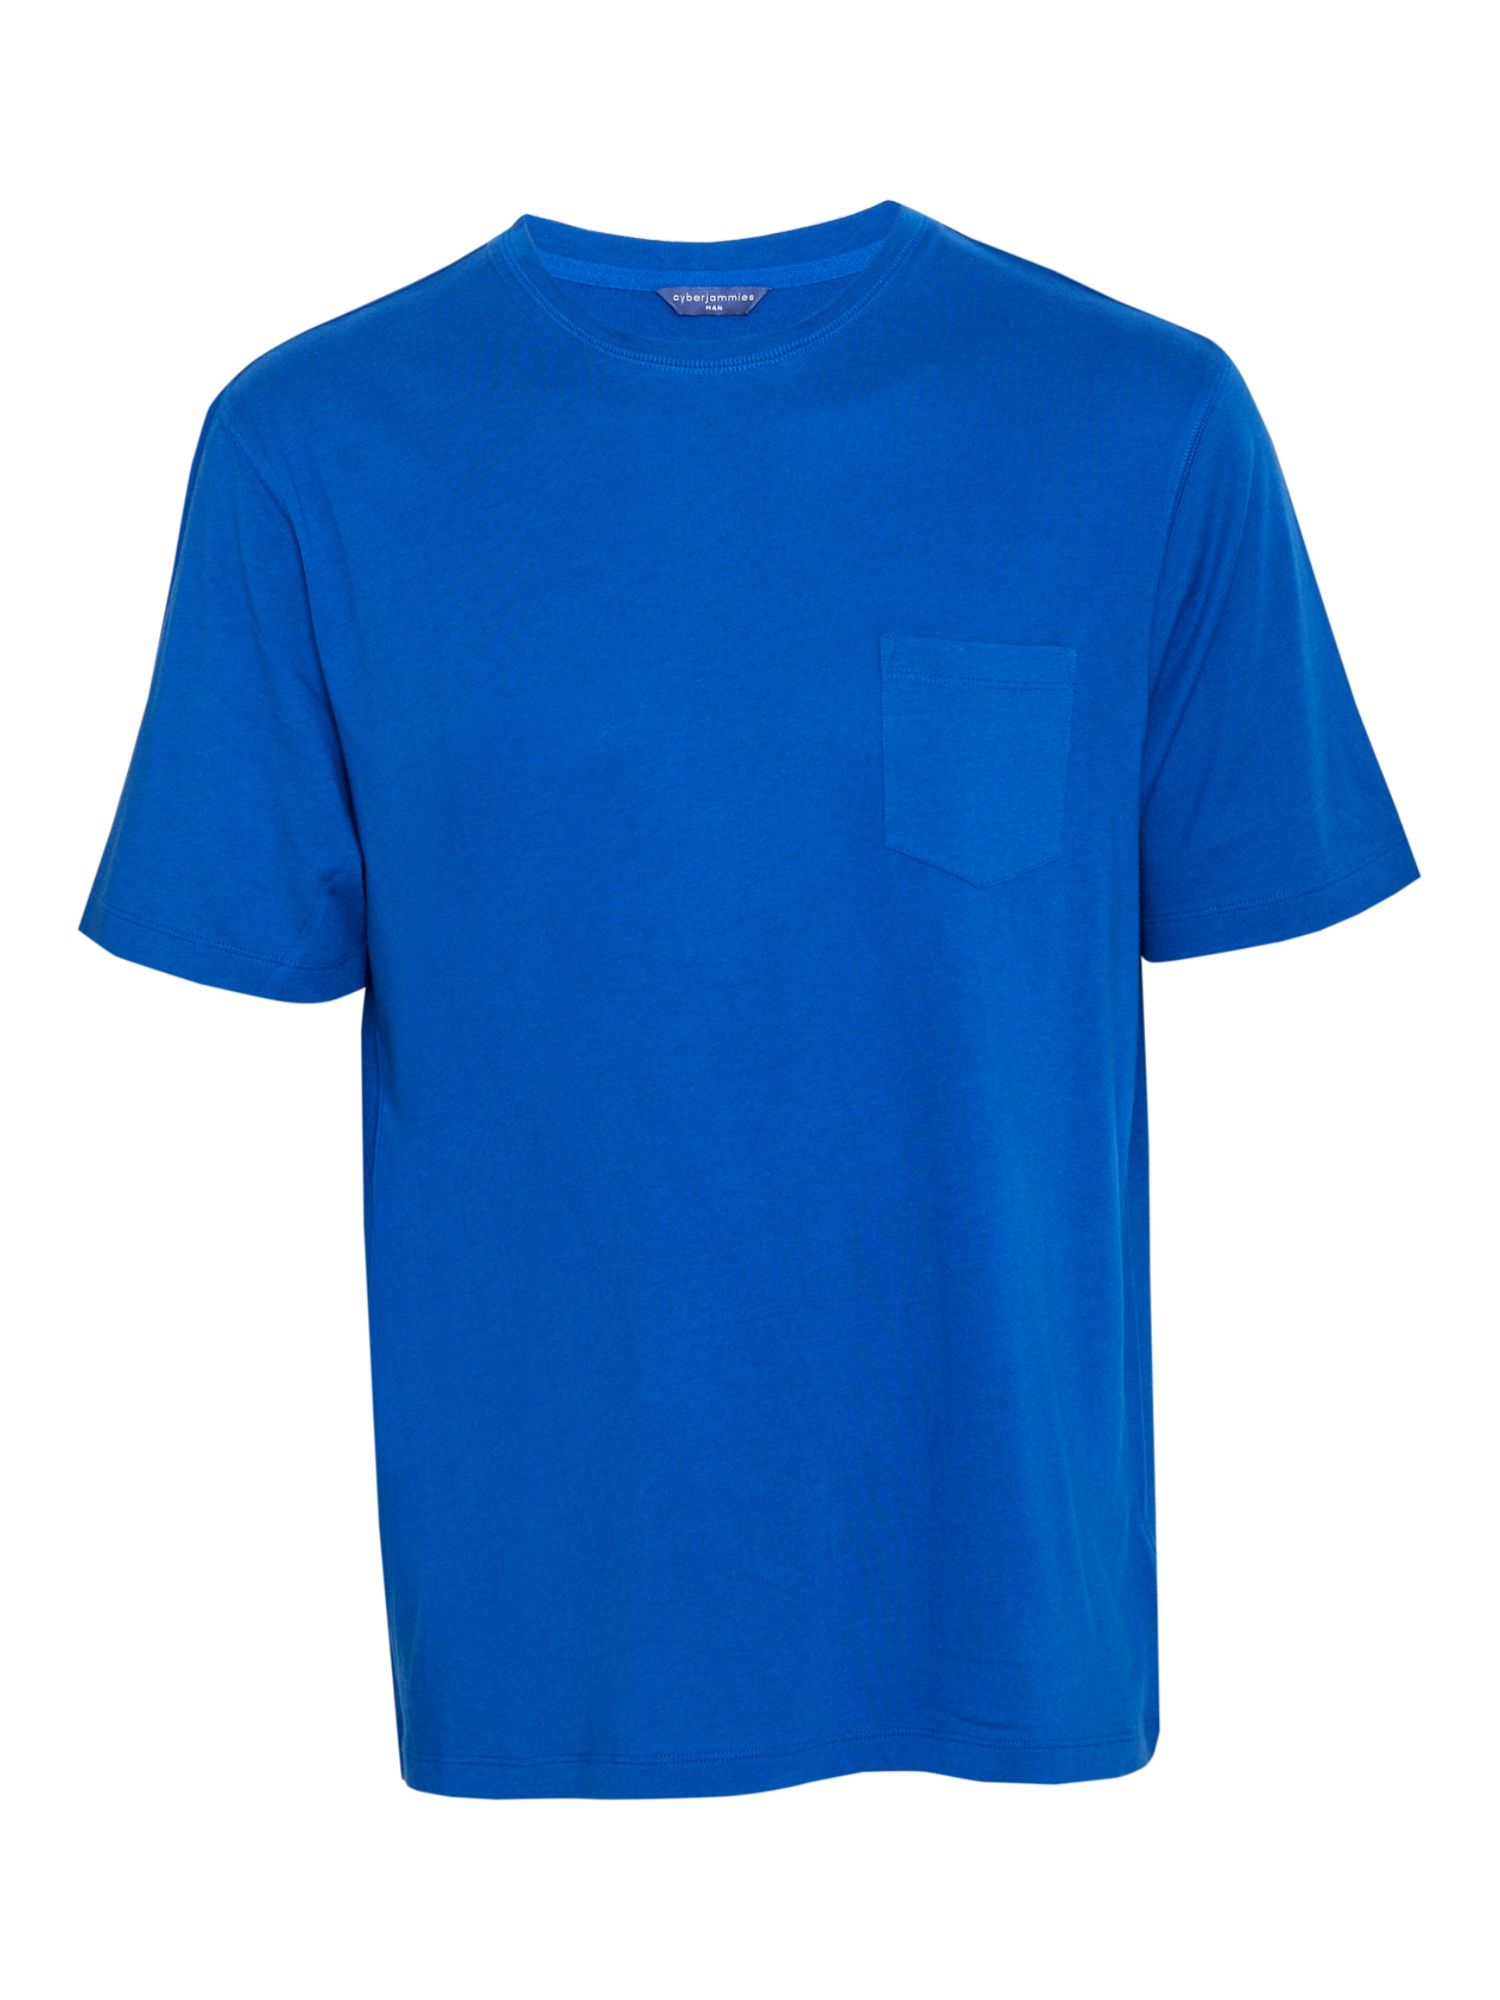 Cyberjammies Aldrin Short Sleeve Jersey Pyjama Top, Blue, S